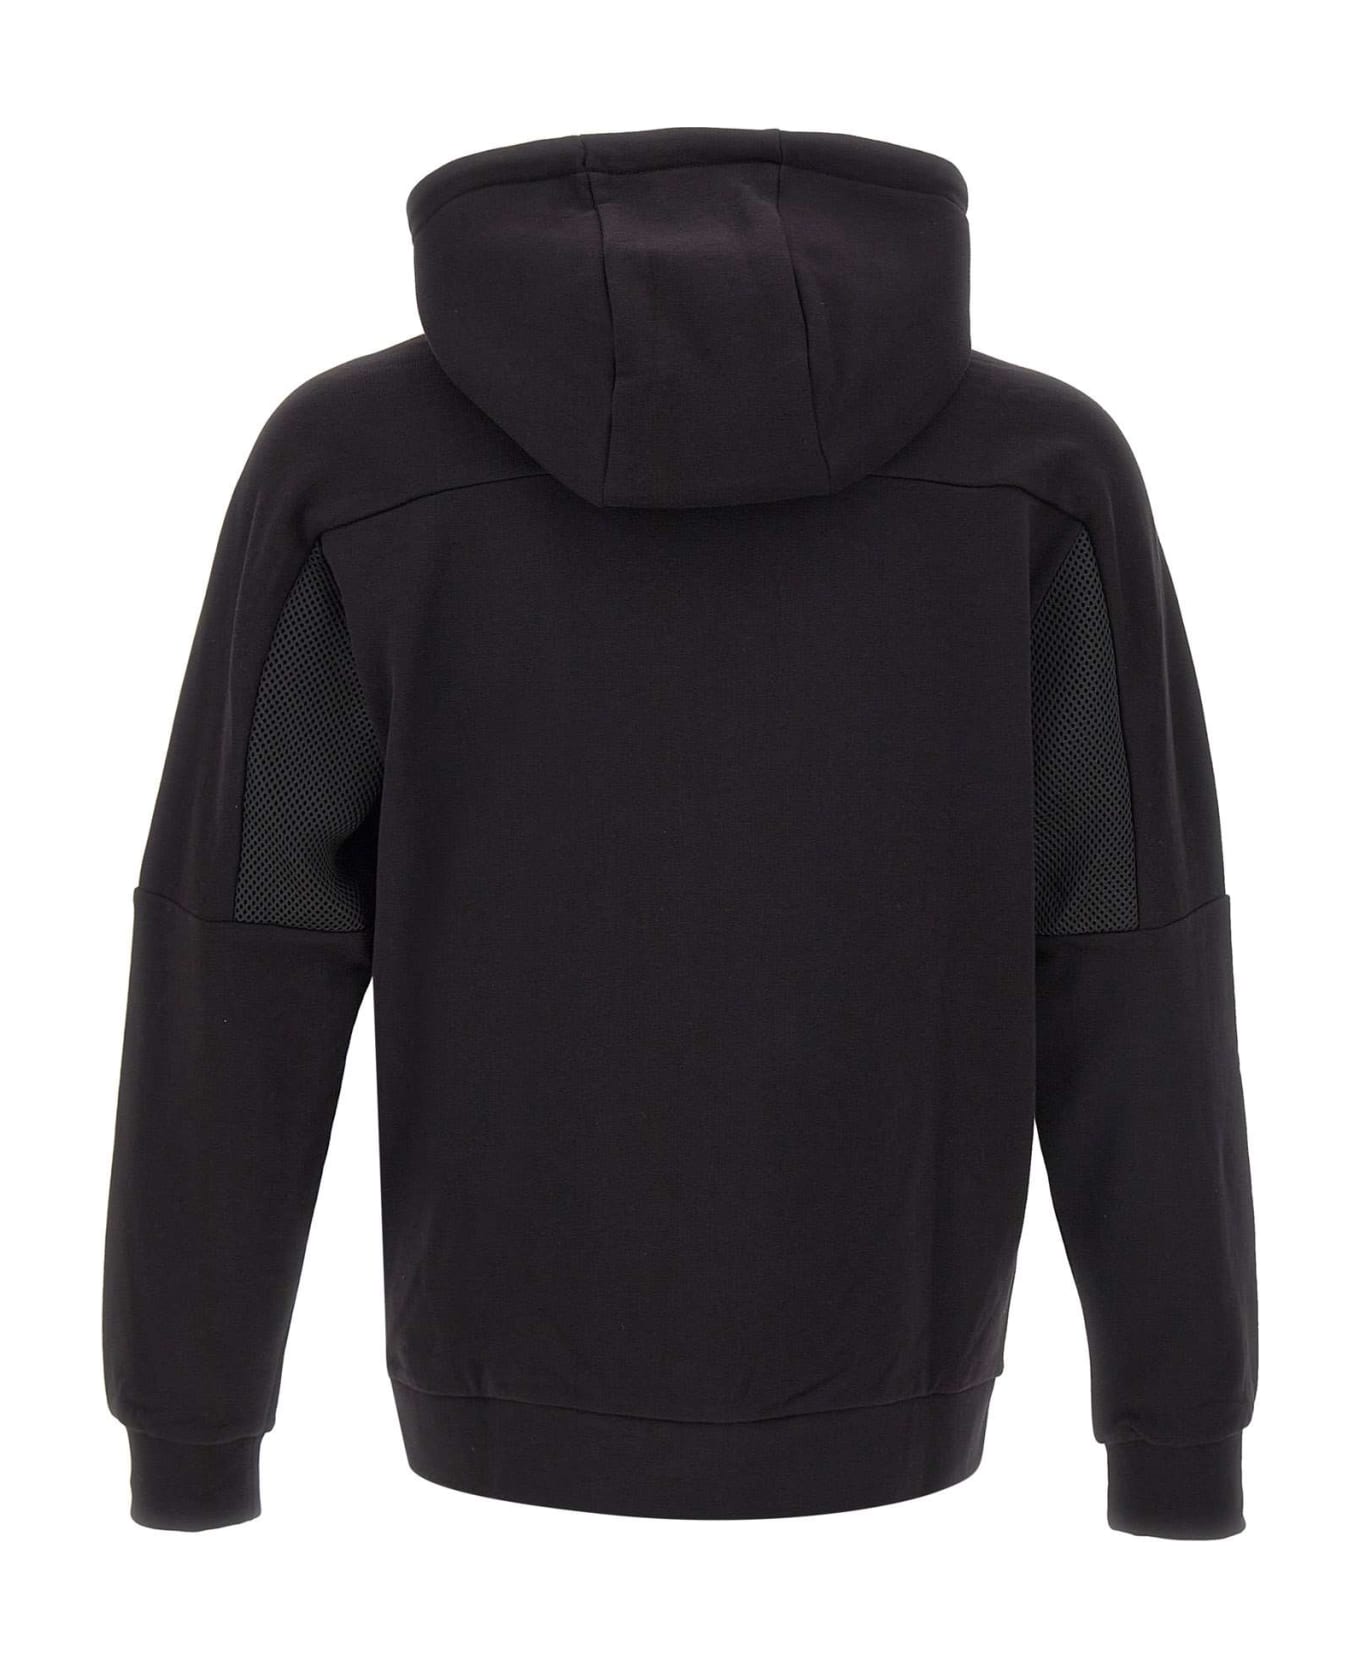 EA7 Cotton Sweatshirt - BLACK